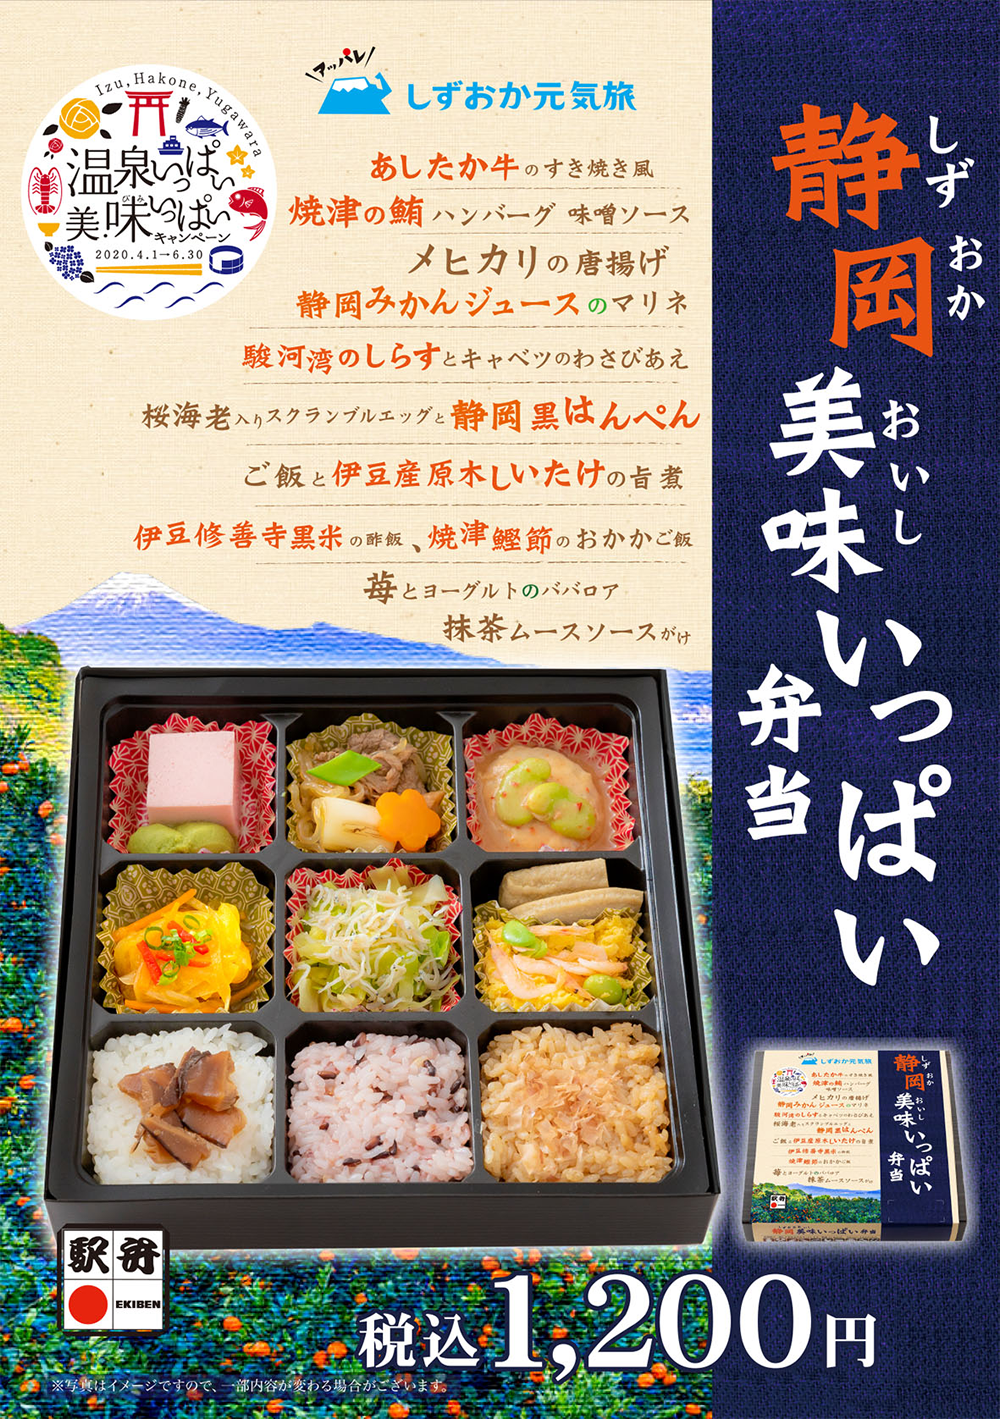 「静岡美味いっぱい弁当」期間限定販売のお知らせ